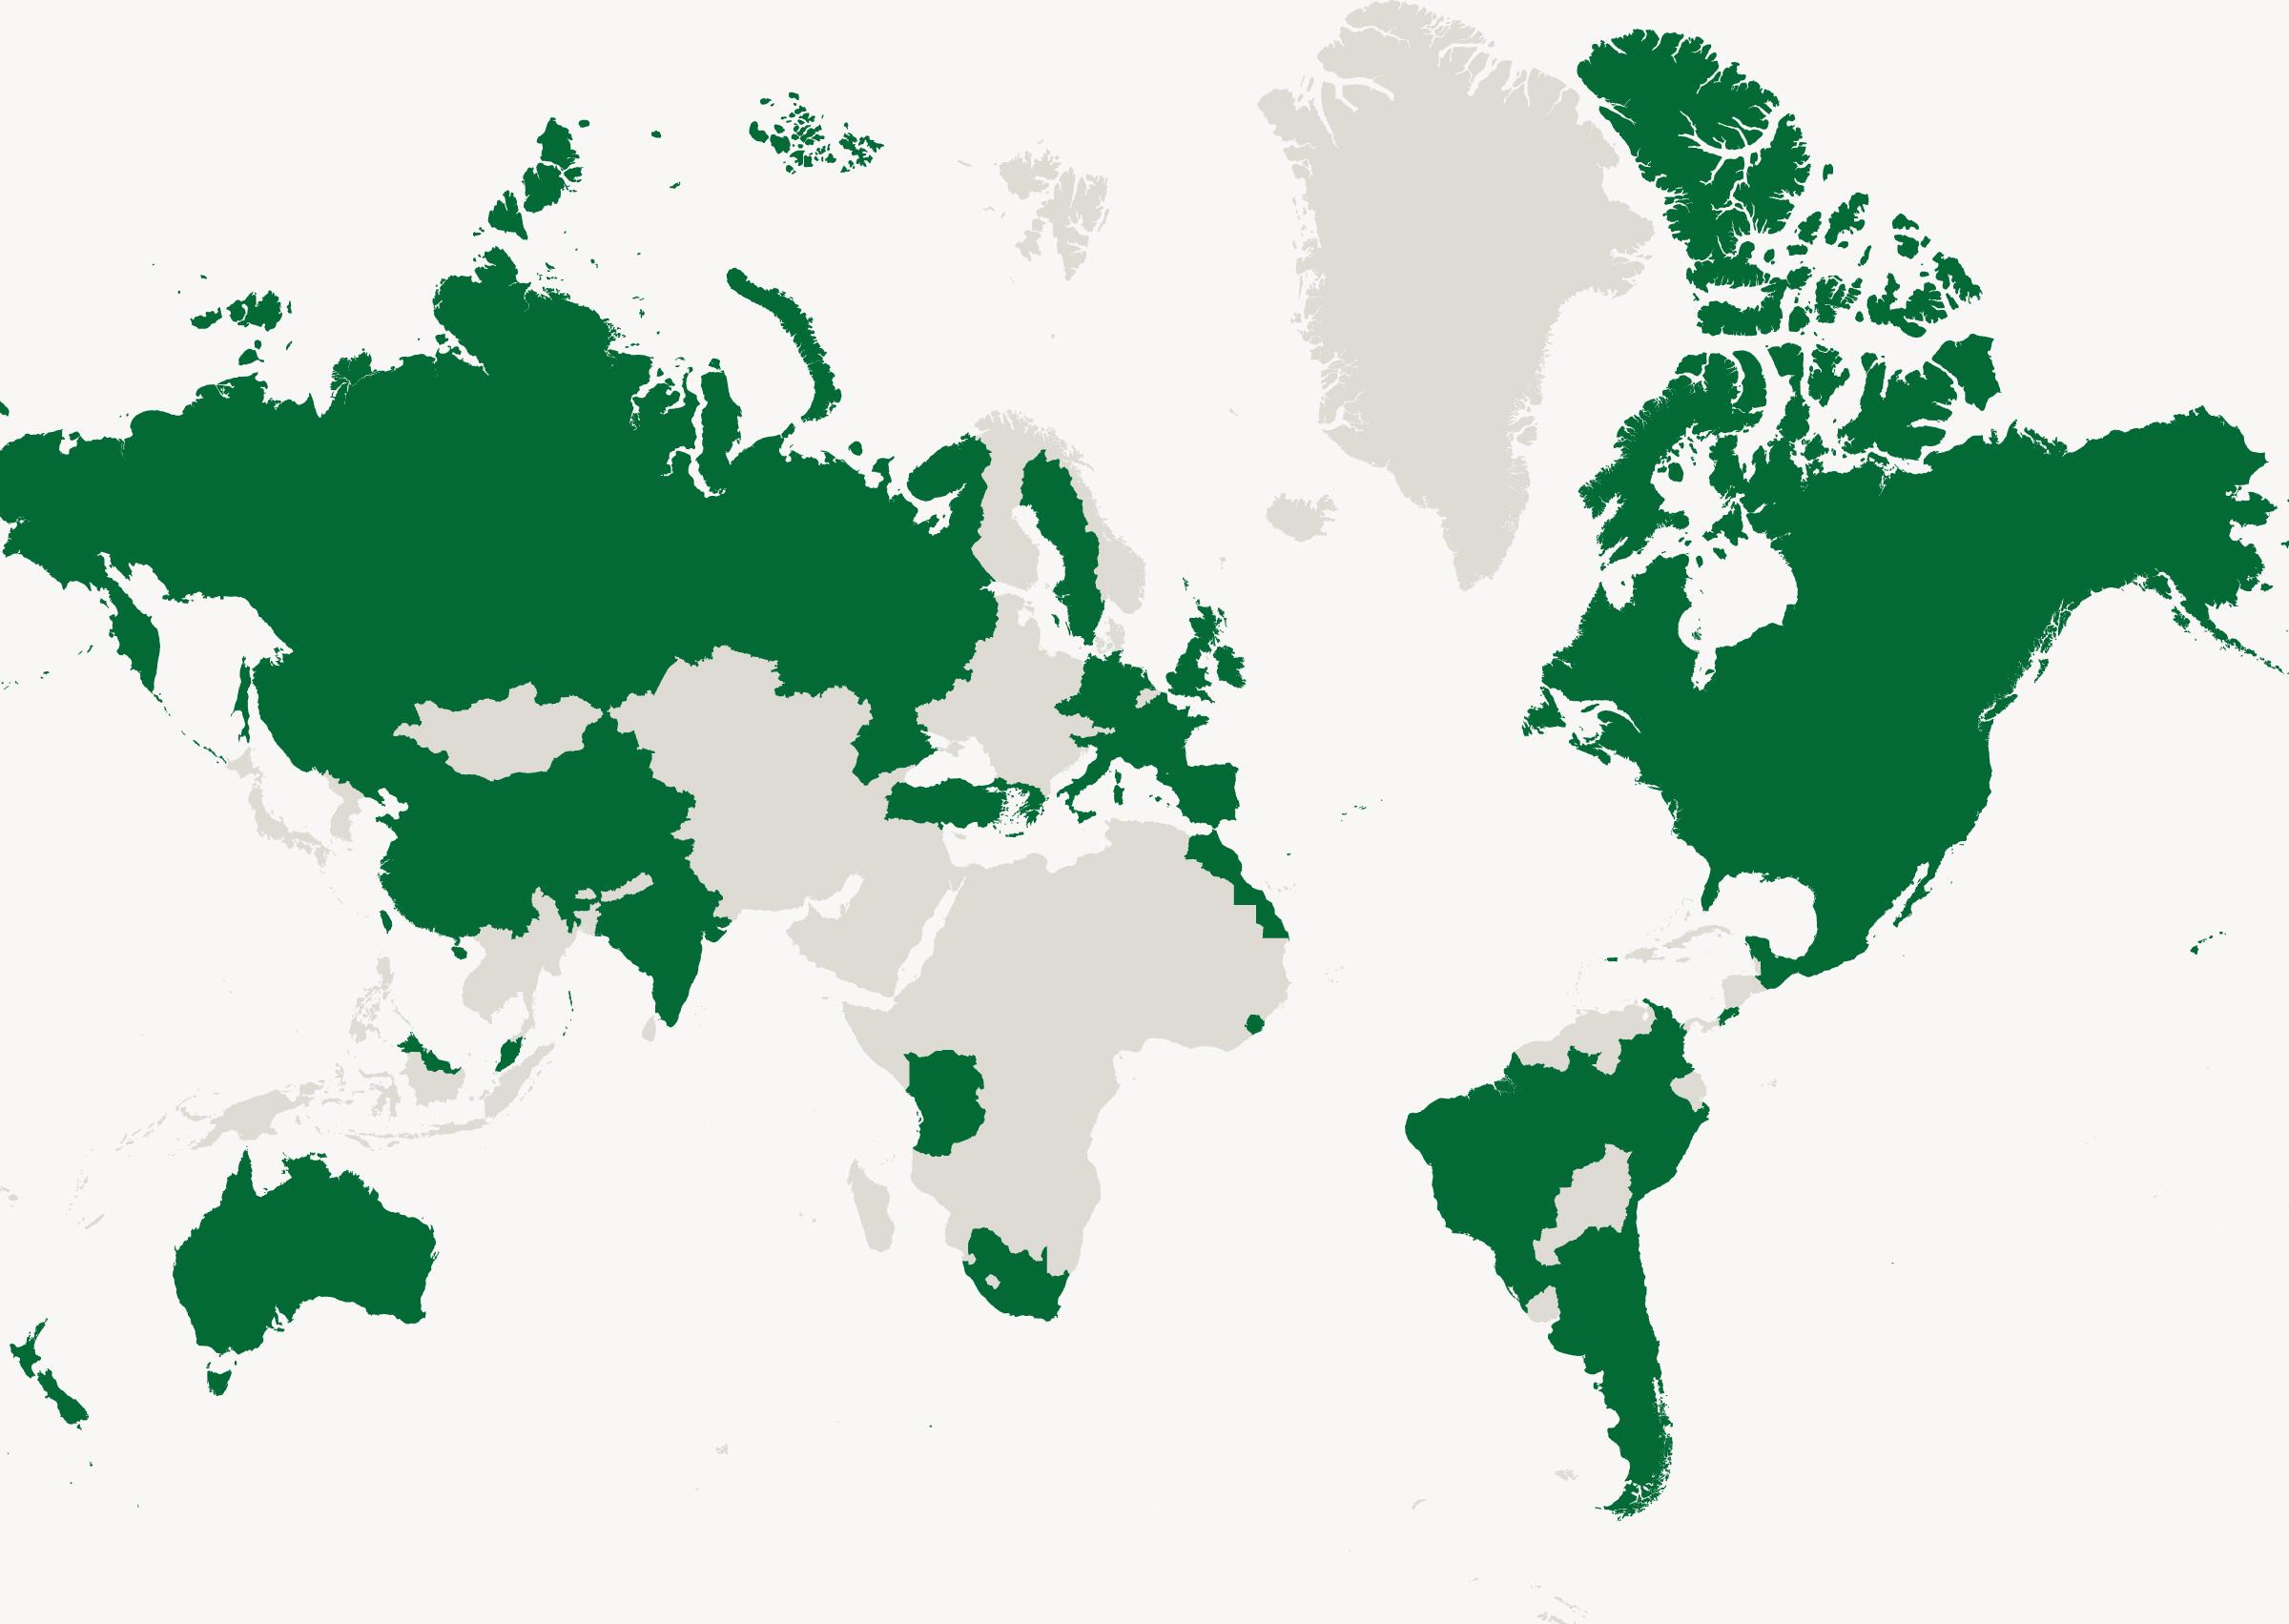 植澳门威尼斯人游戏节基金会的国际社区种植合作伙伴的地图视图